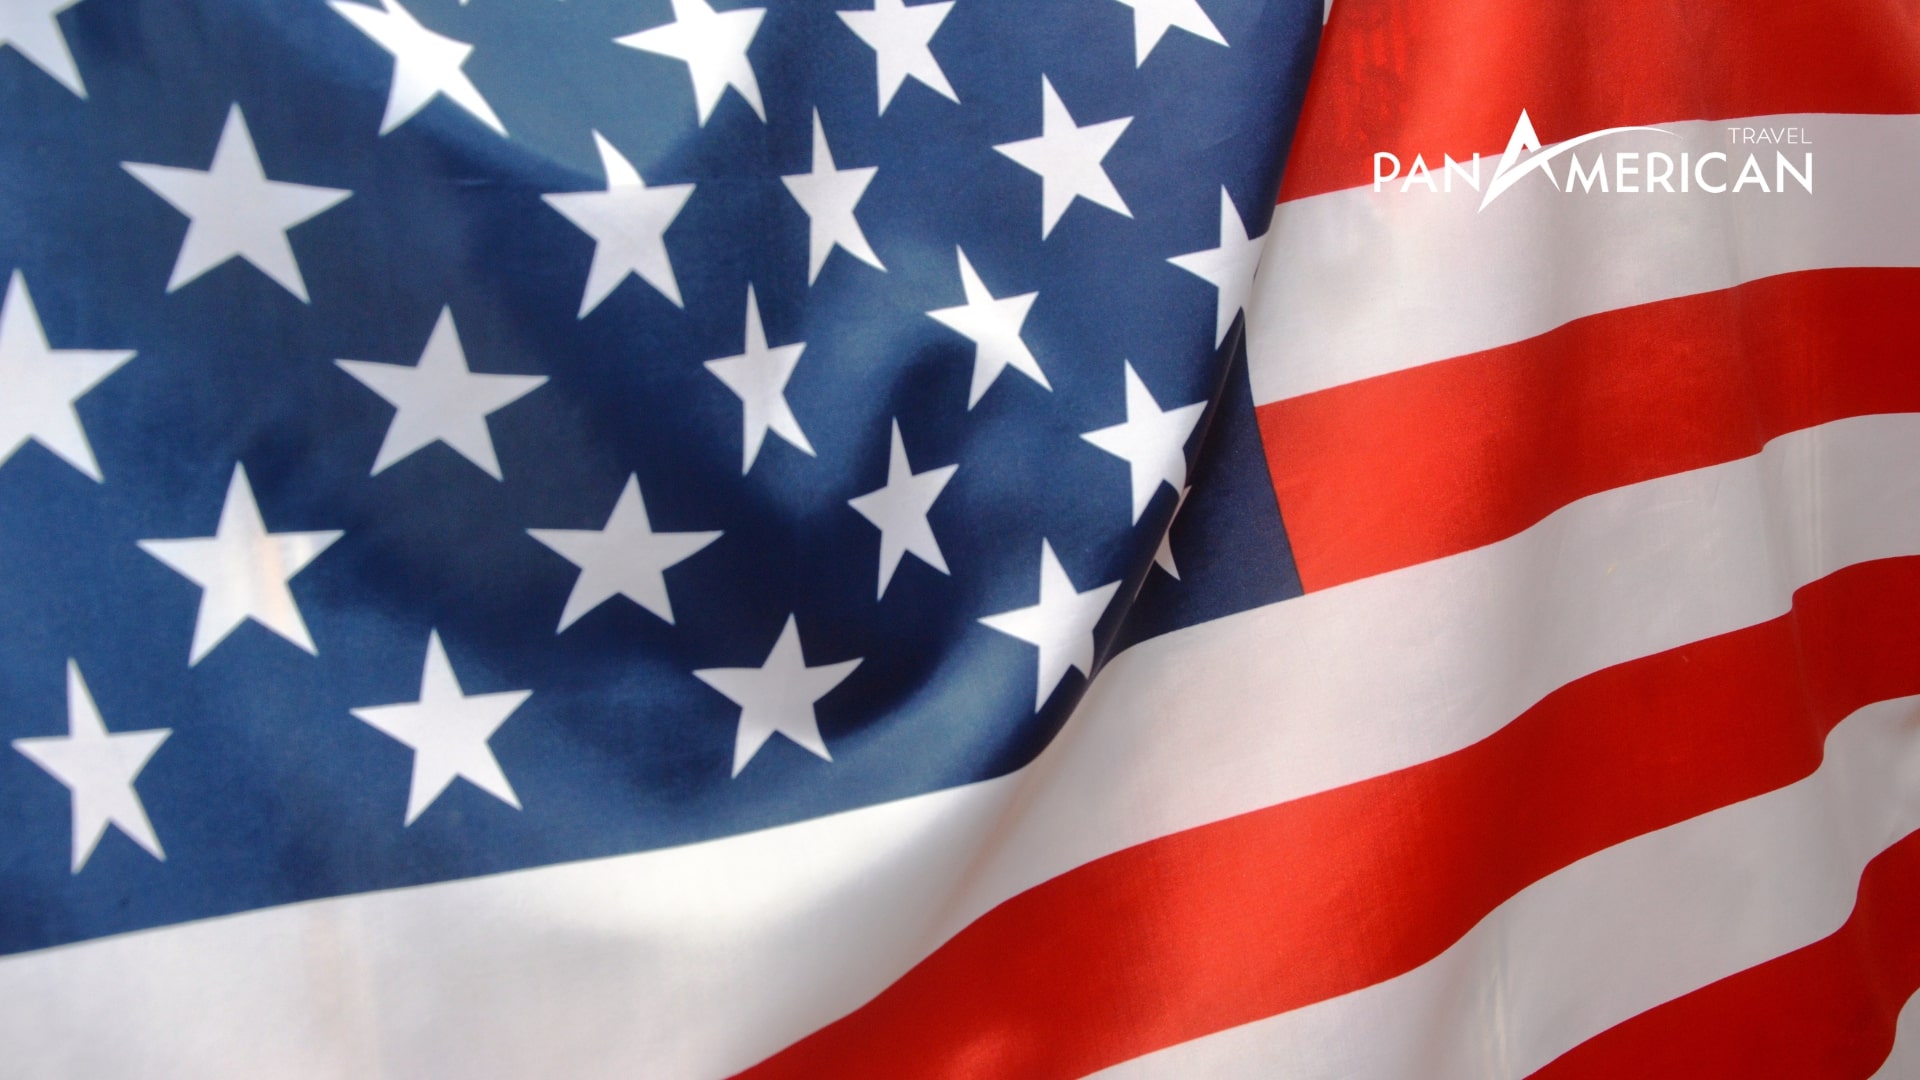 Lá quốc kỳ Hợp chủng quốc Hoa Kỳ với ý nghĩa của sự độc lập, tự do và lòng yêu nước